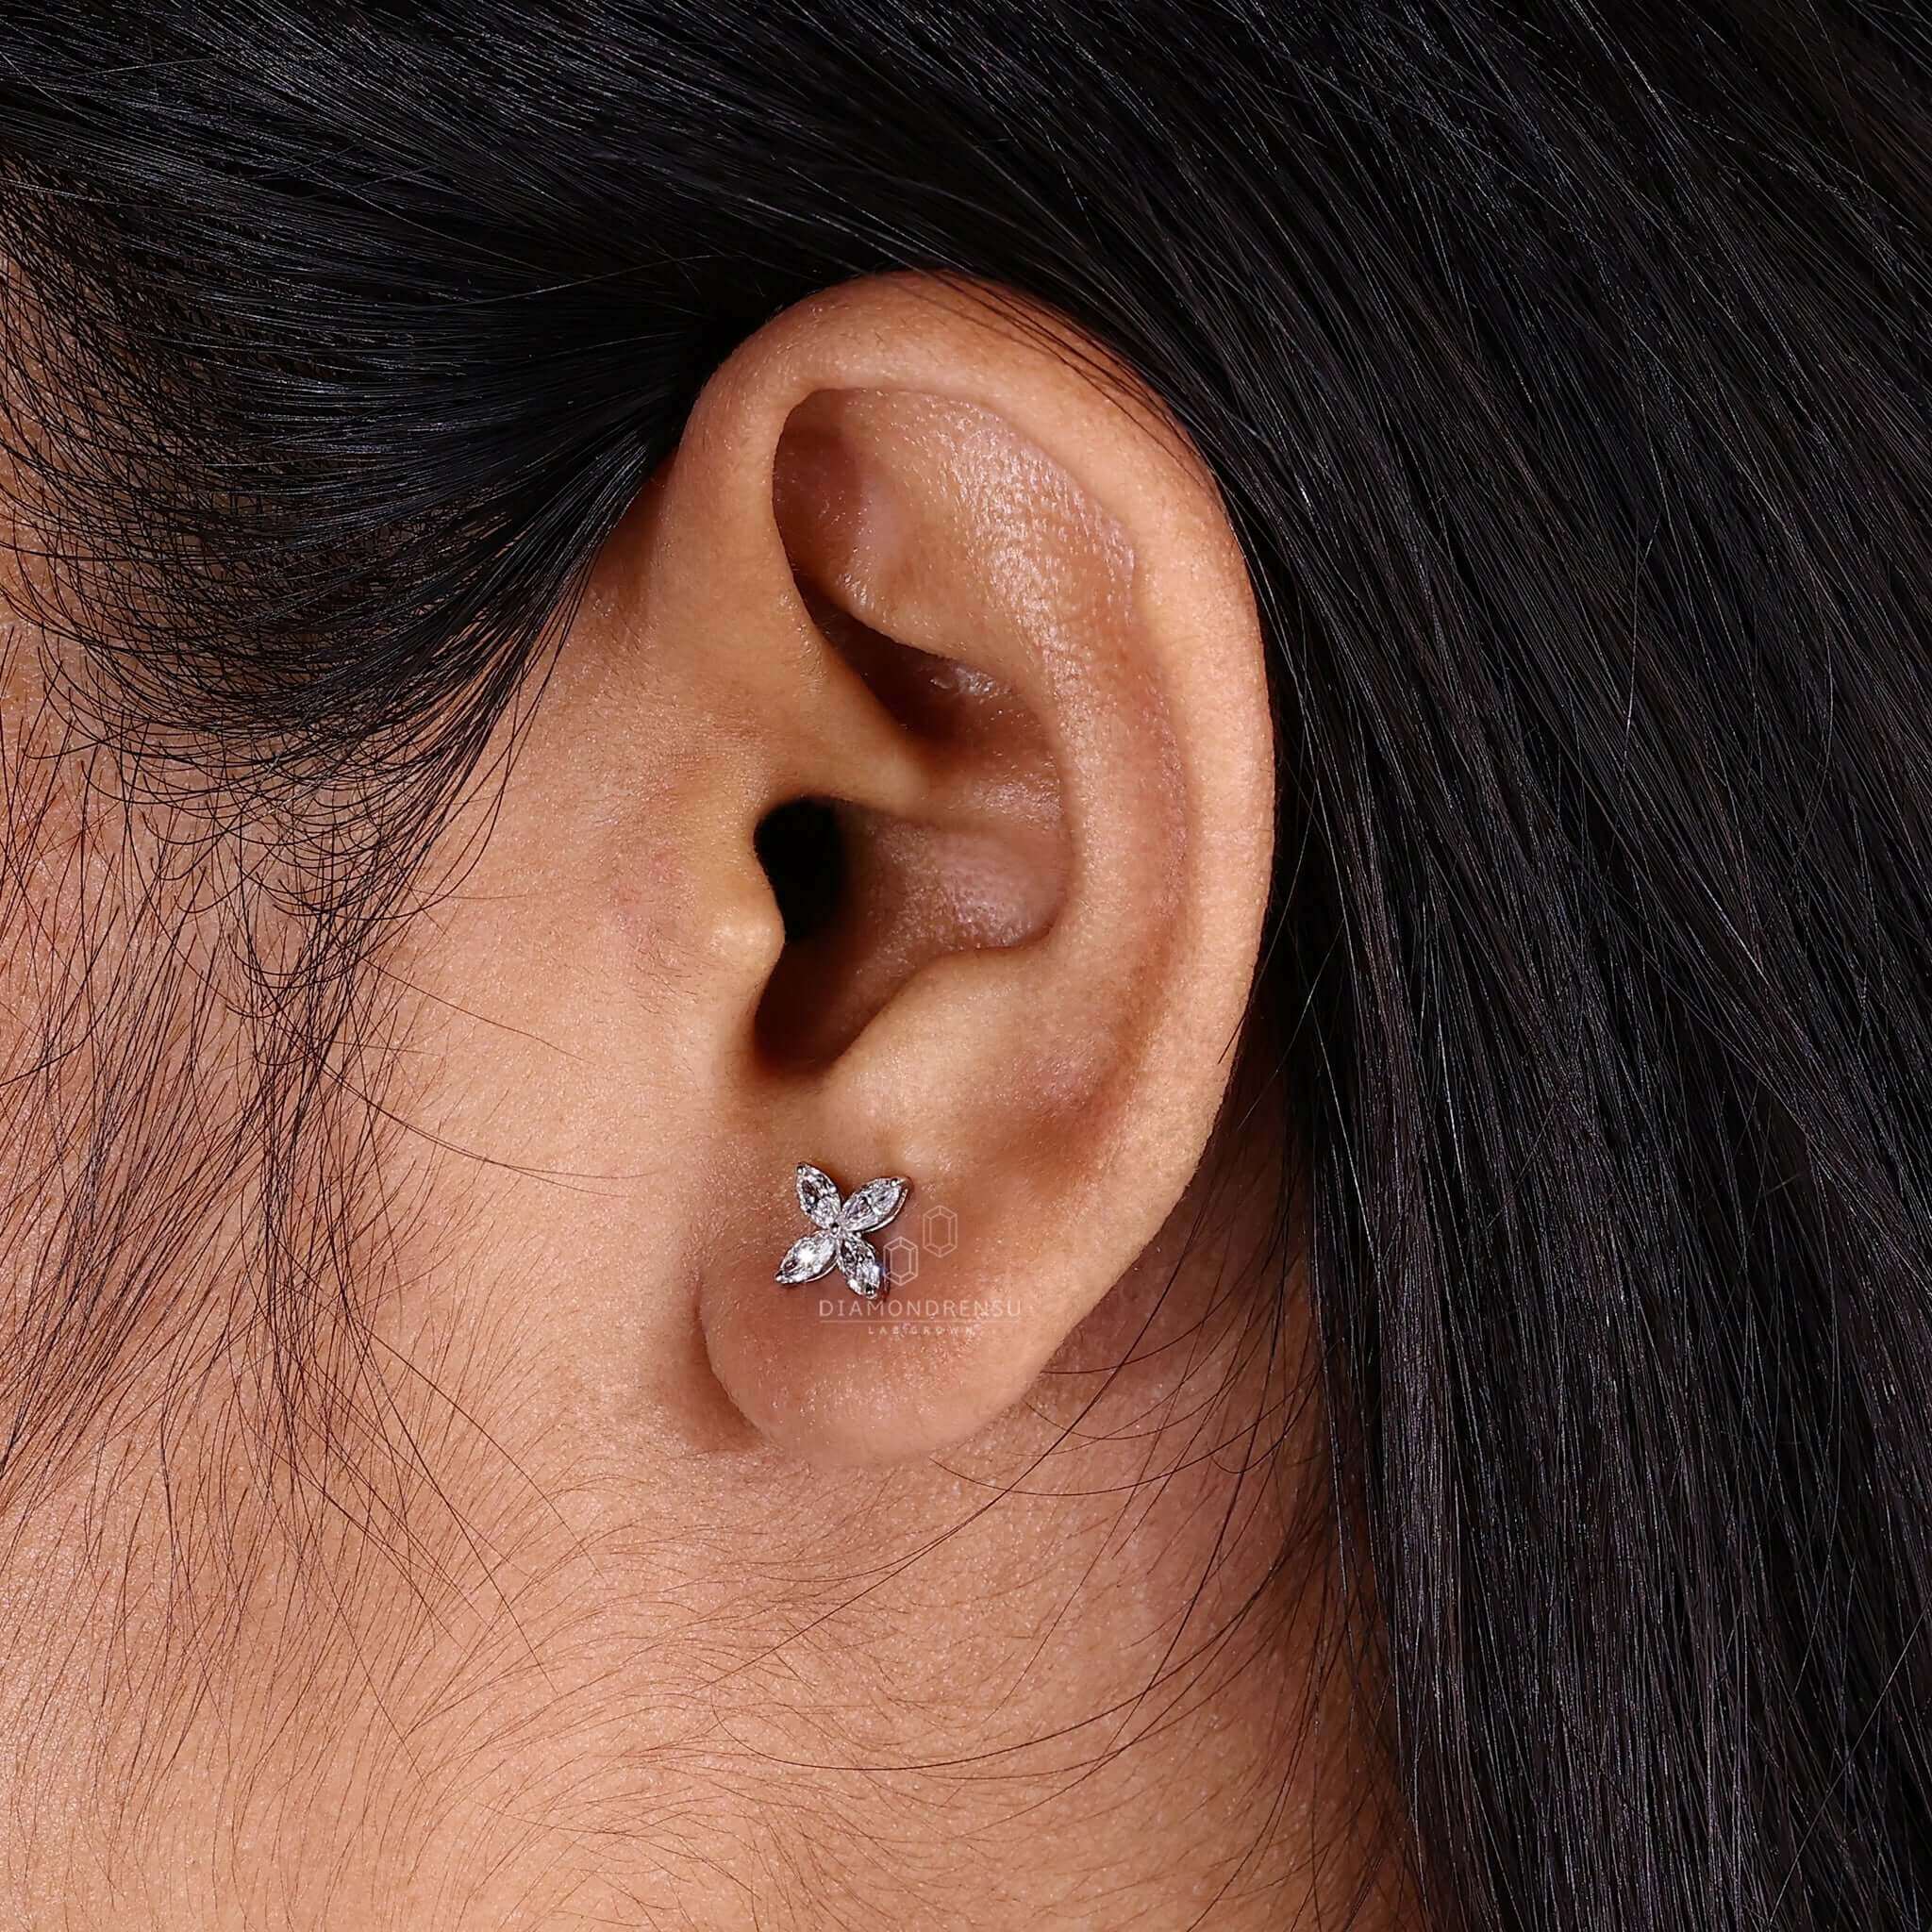 diamond wedding earrings